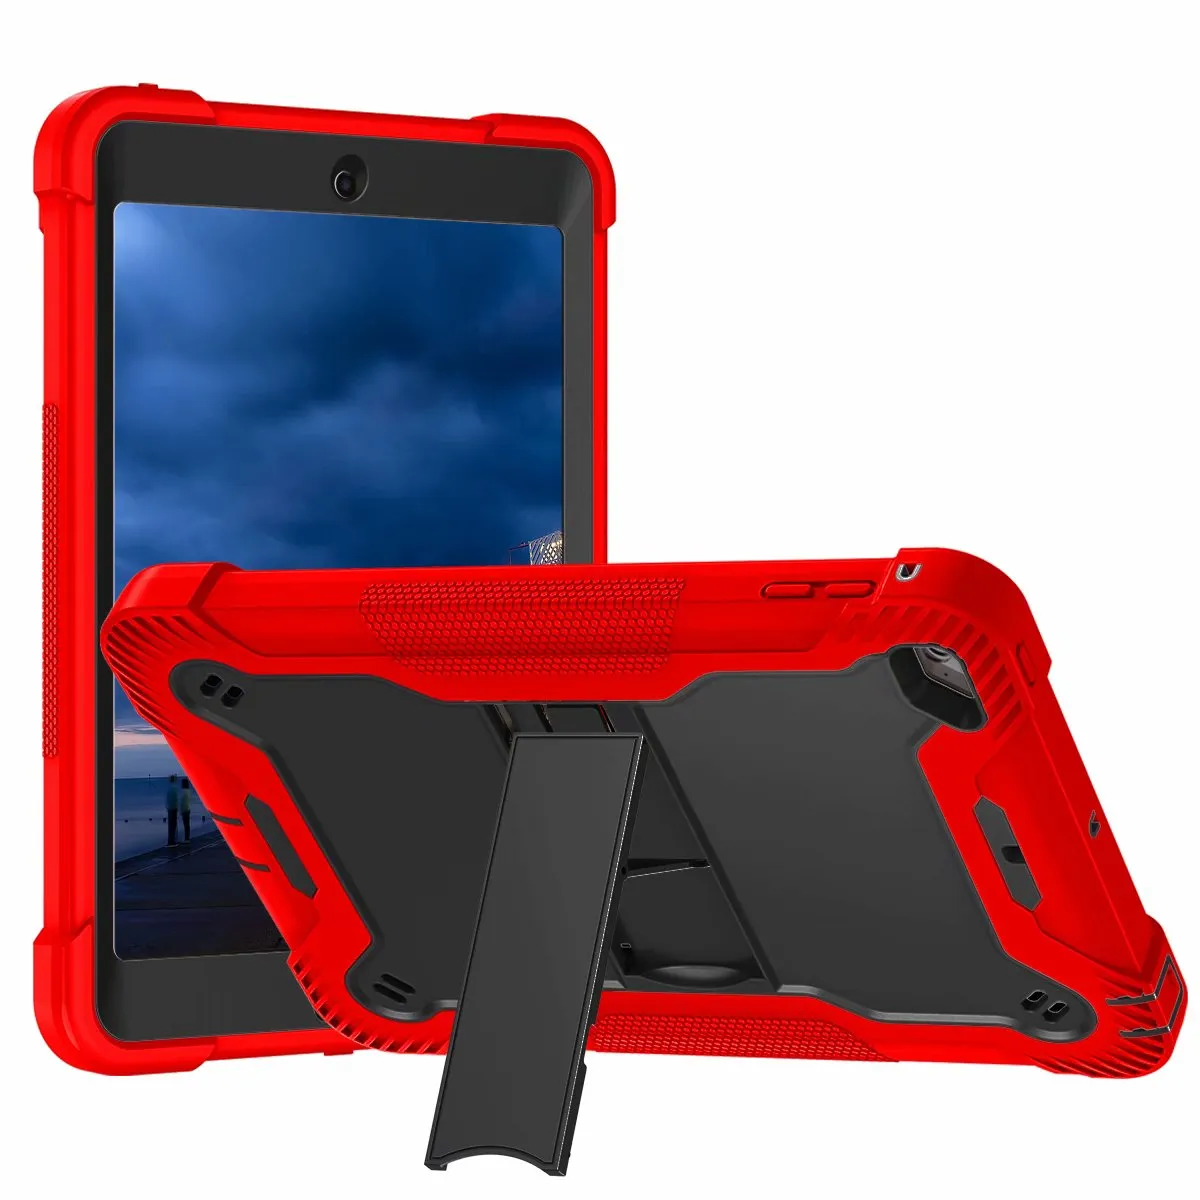 3 warstwy Full Body Case Ochronna na szakatozorpialny twardy PC + miękka pokrywa silikonowa Wbudowana okładka wbudowany dla iPada Mini 4 iPad MINI 5 2019 przypadki